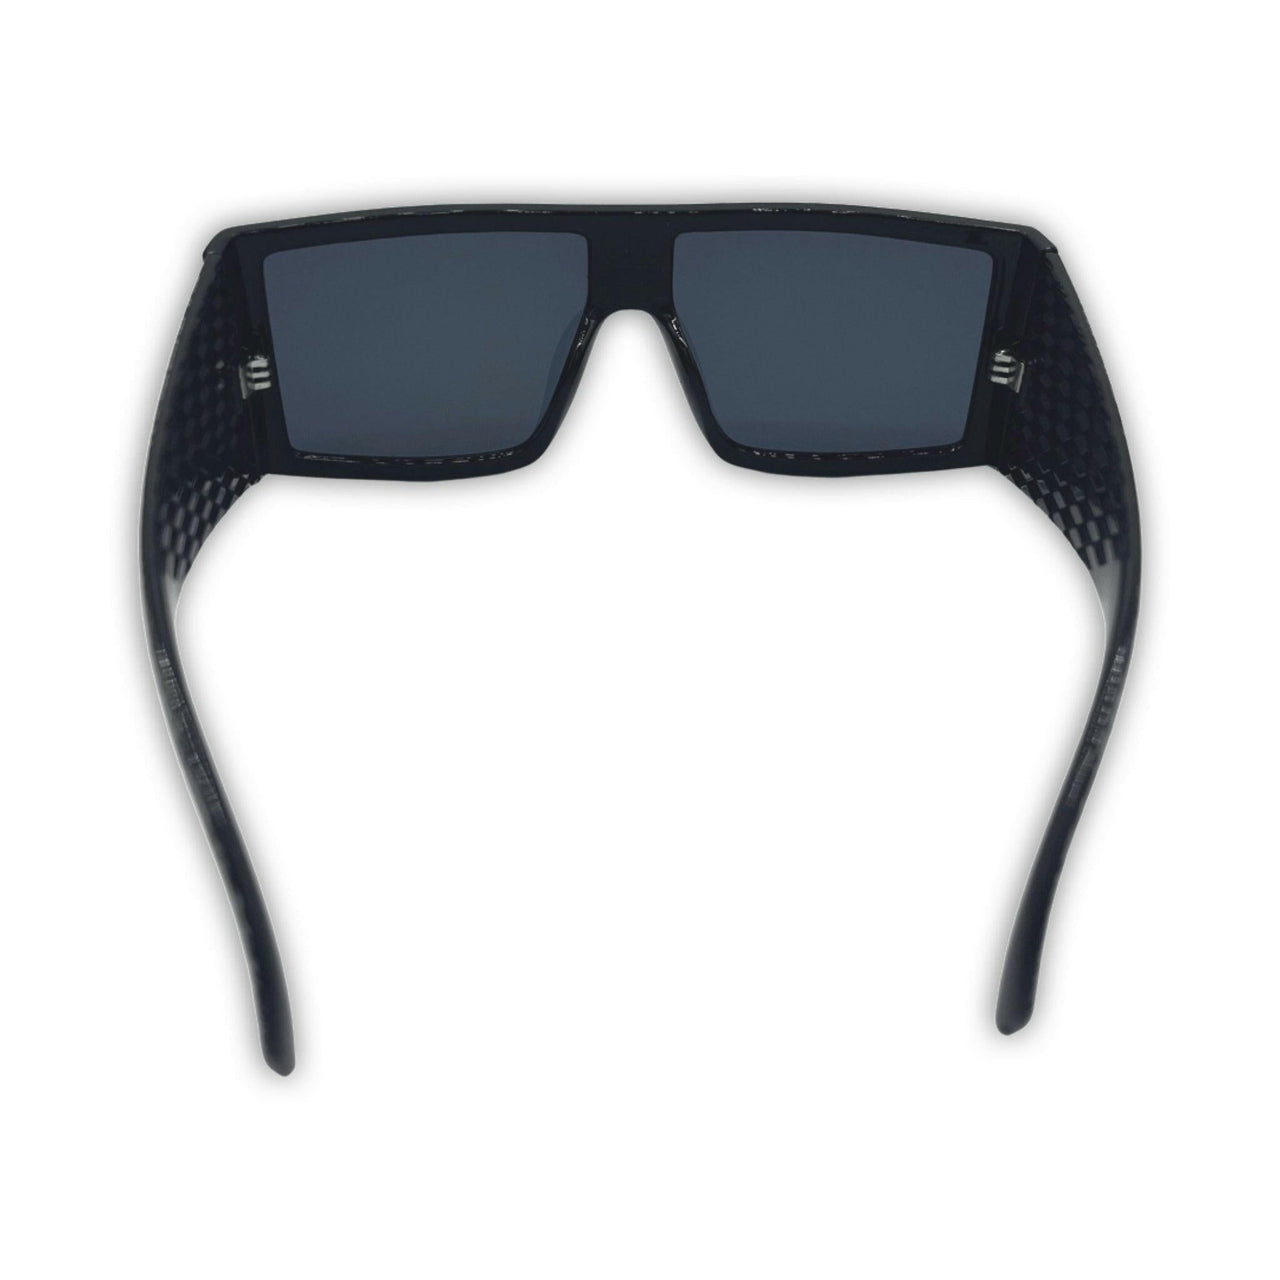 Dana White Bandana Sunglasses